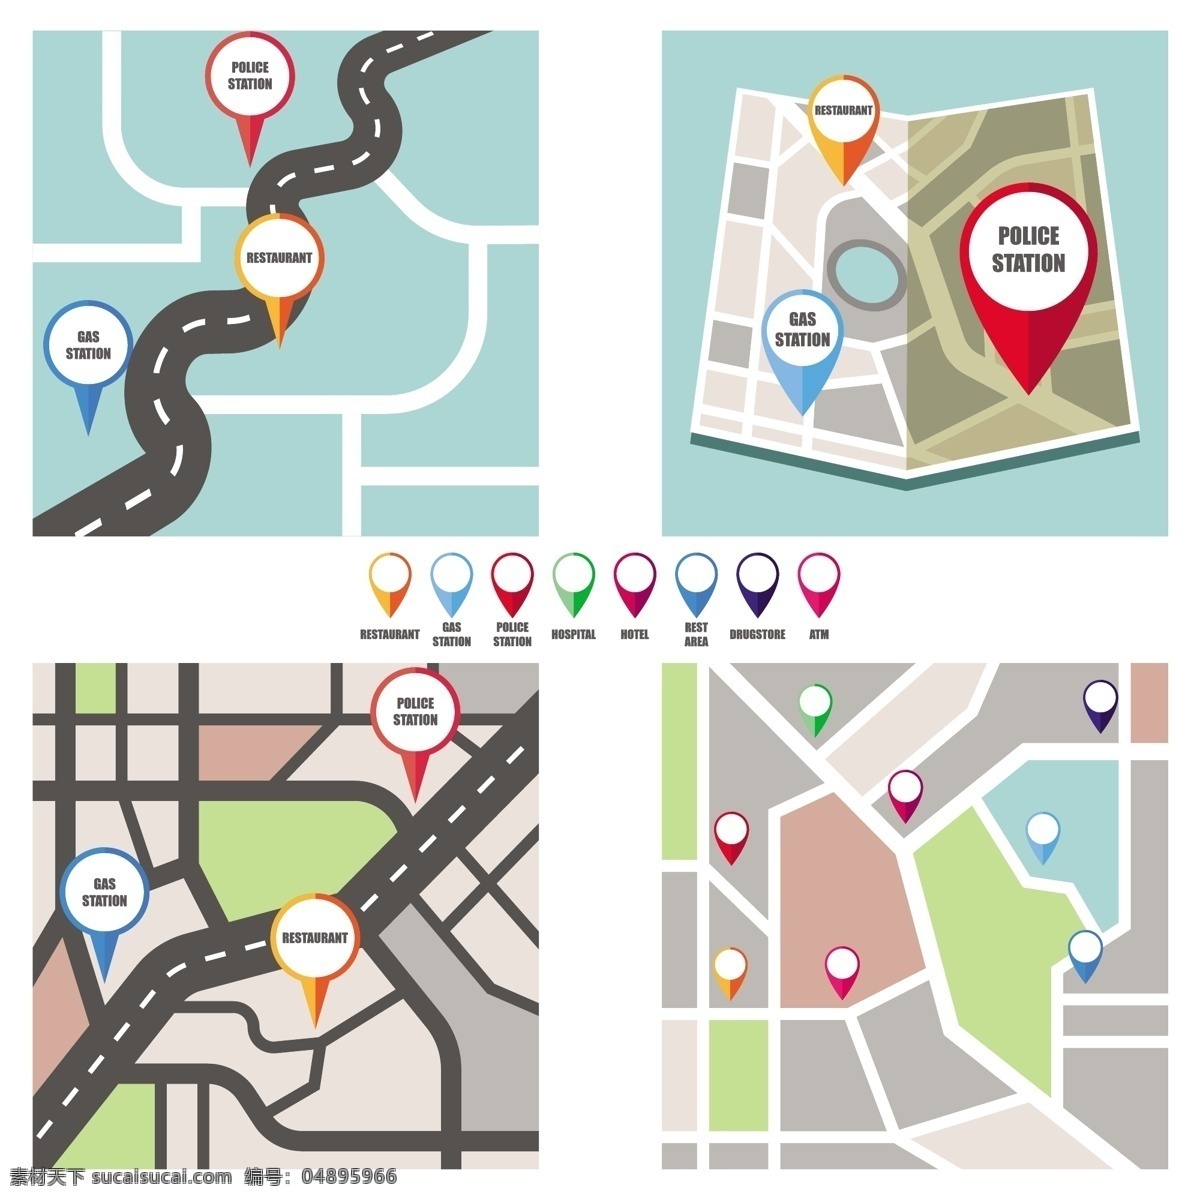 五颜六色 针 指向 重要 公共 区域 路线图 背景 宣传册 抽象背景 商业 抽象 旅游 模板 线条 地图 道路 宣传册模板 图表 布局 艺术 网页 图形 时间 色彩 符号 创意